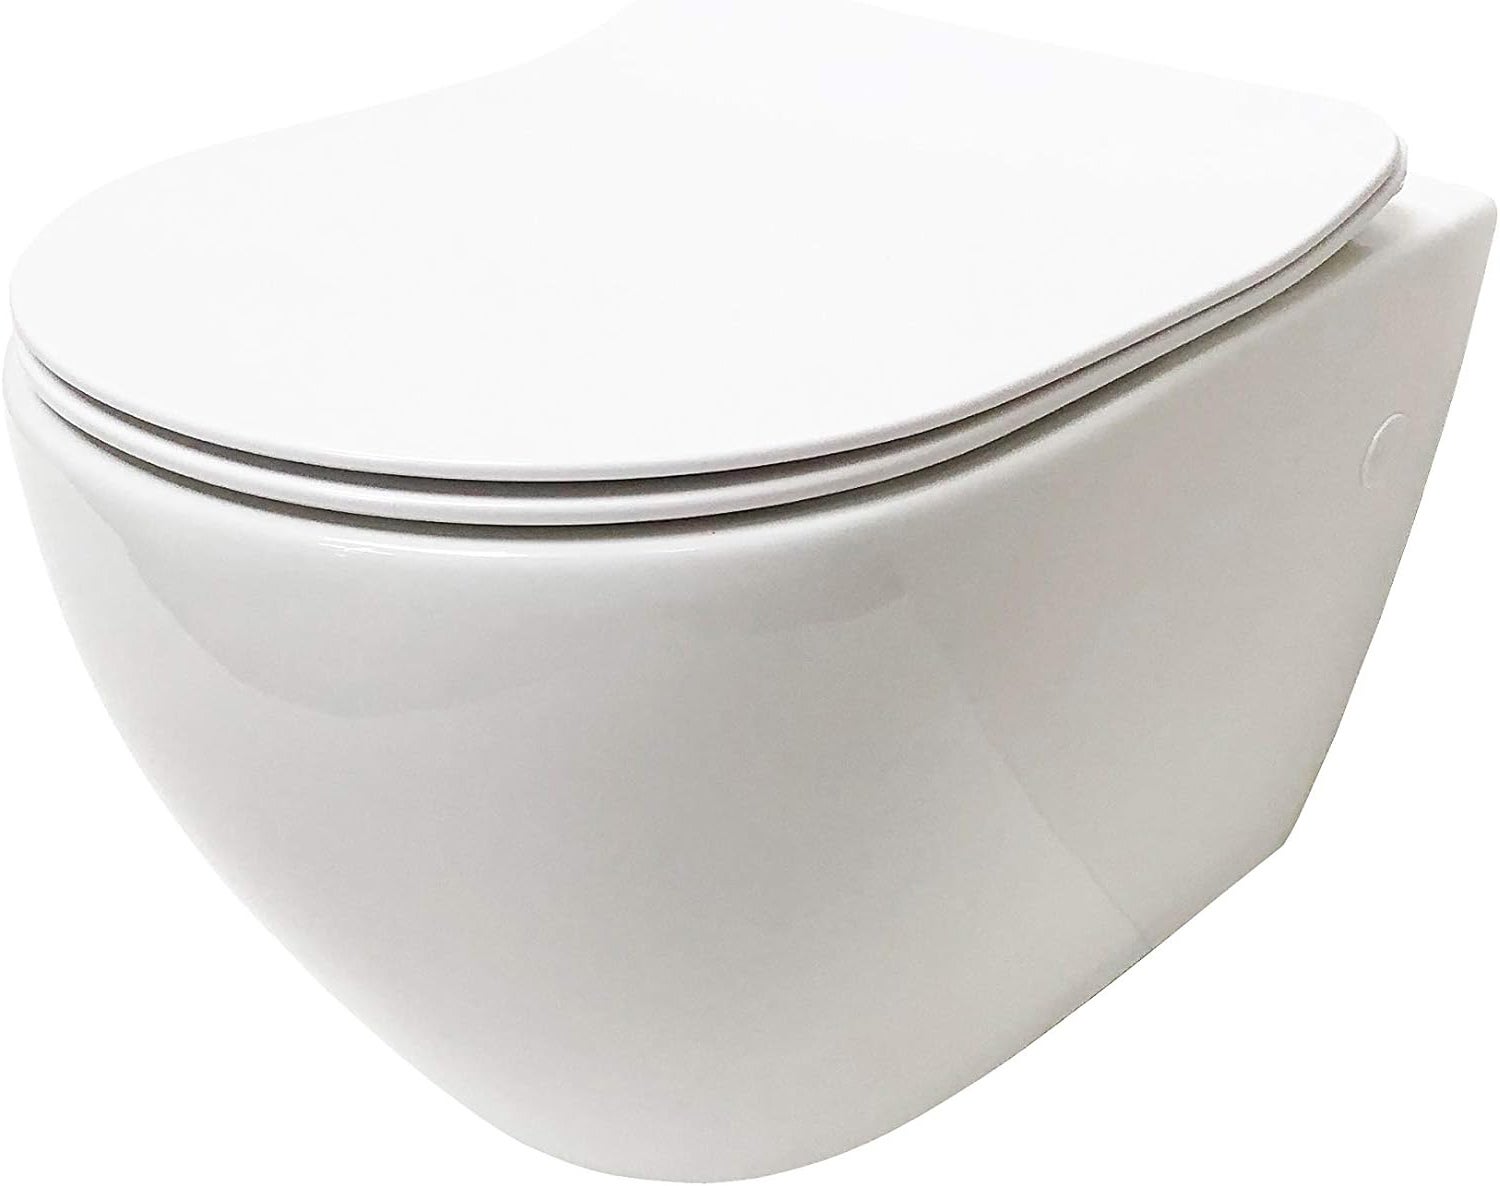 Design Wand-WC ADOB Tiefspüler ohne Spülrand wassersparend inkl. Schallschutzmatte inkl. WC-Sitz mit Absenkautomatik